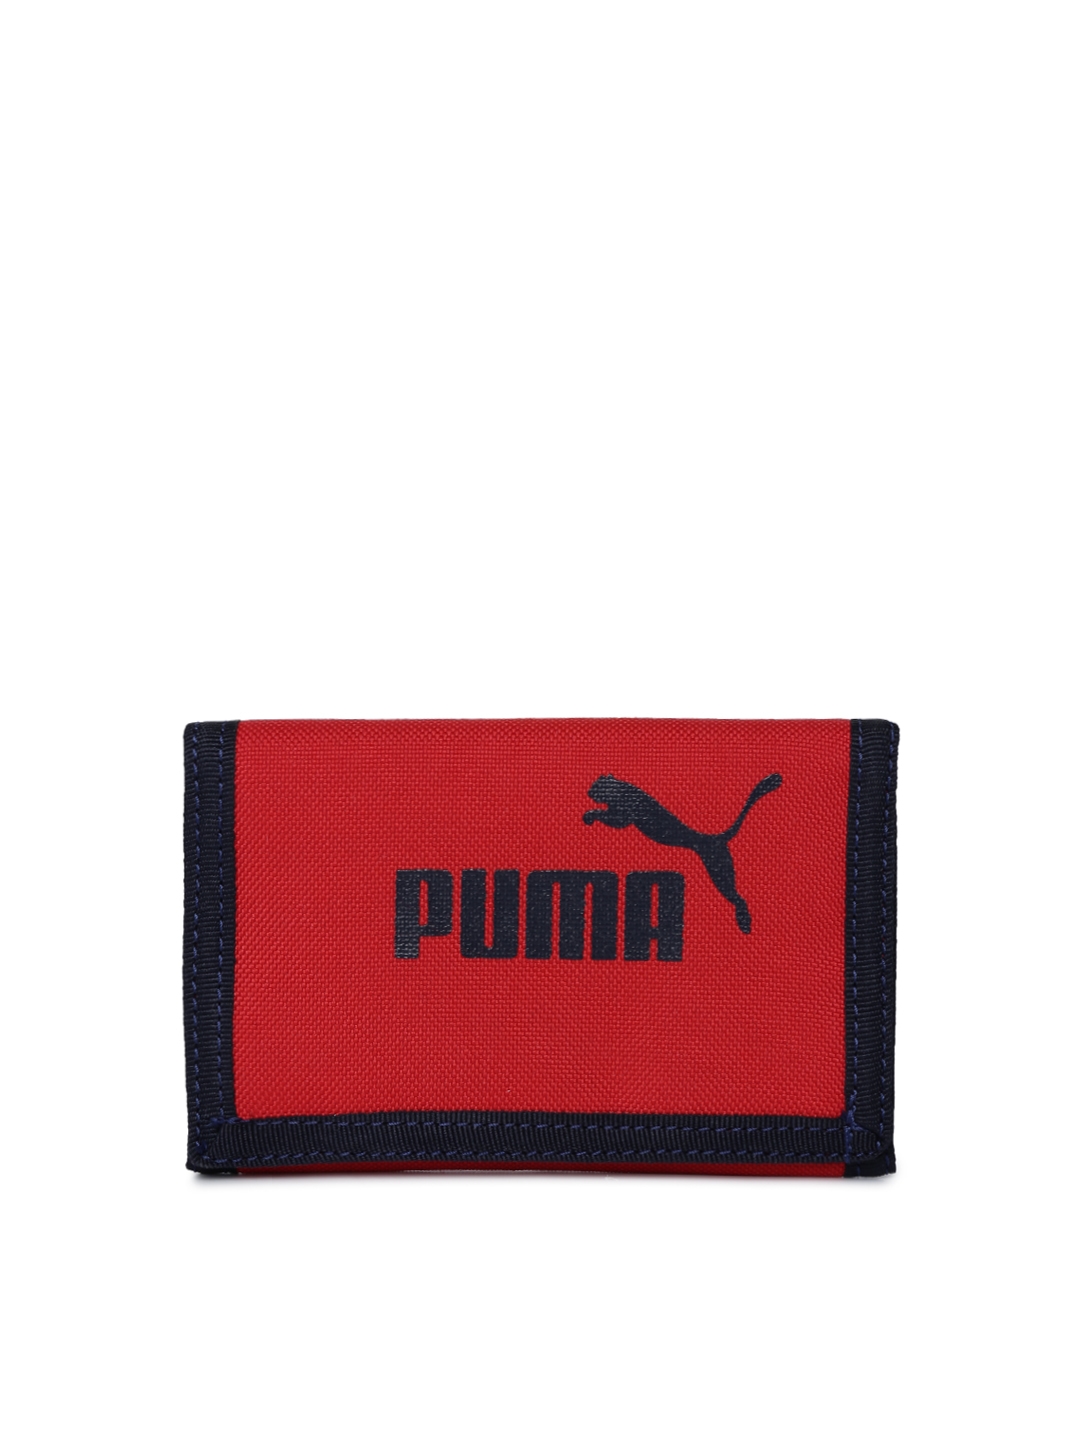 puma 3 fold wallets